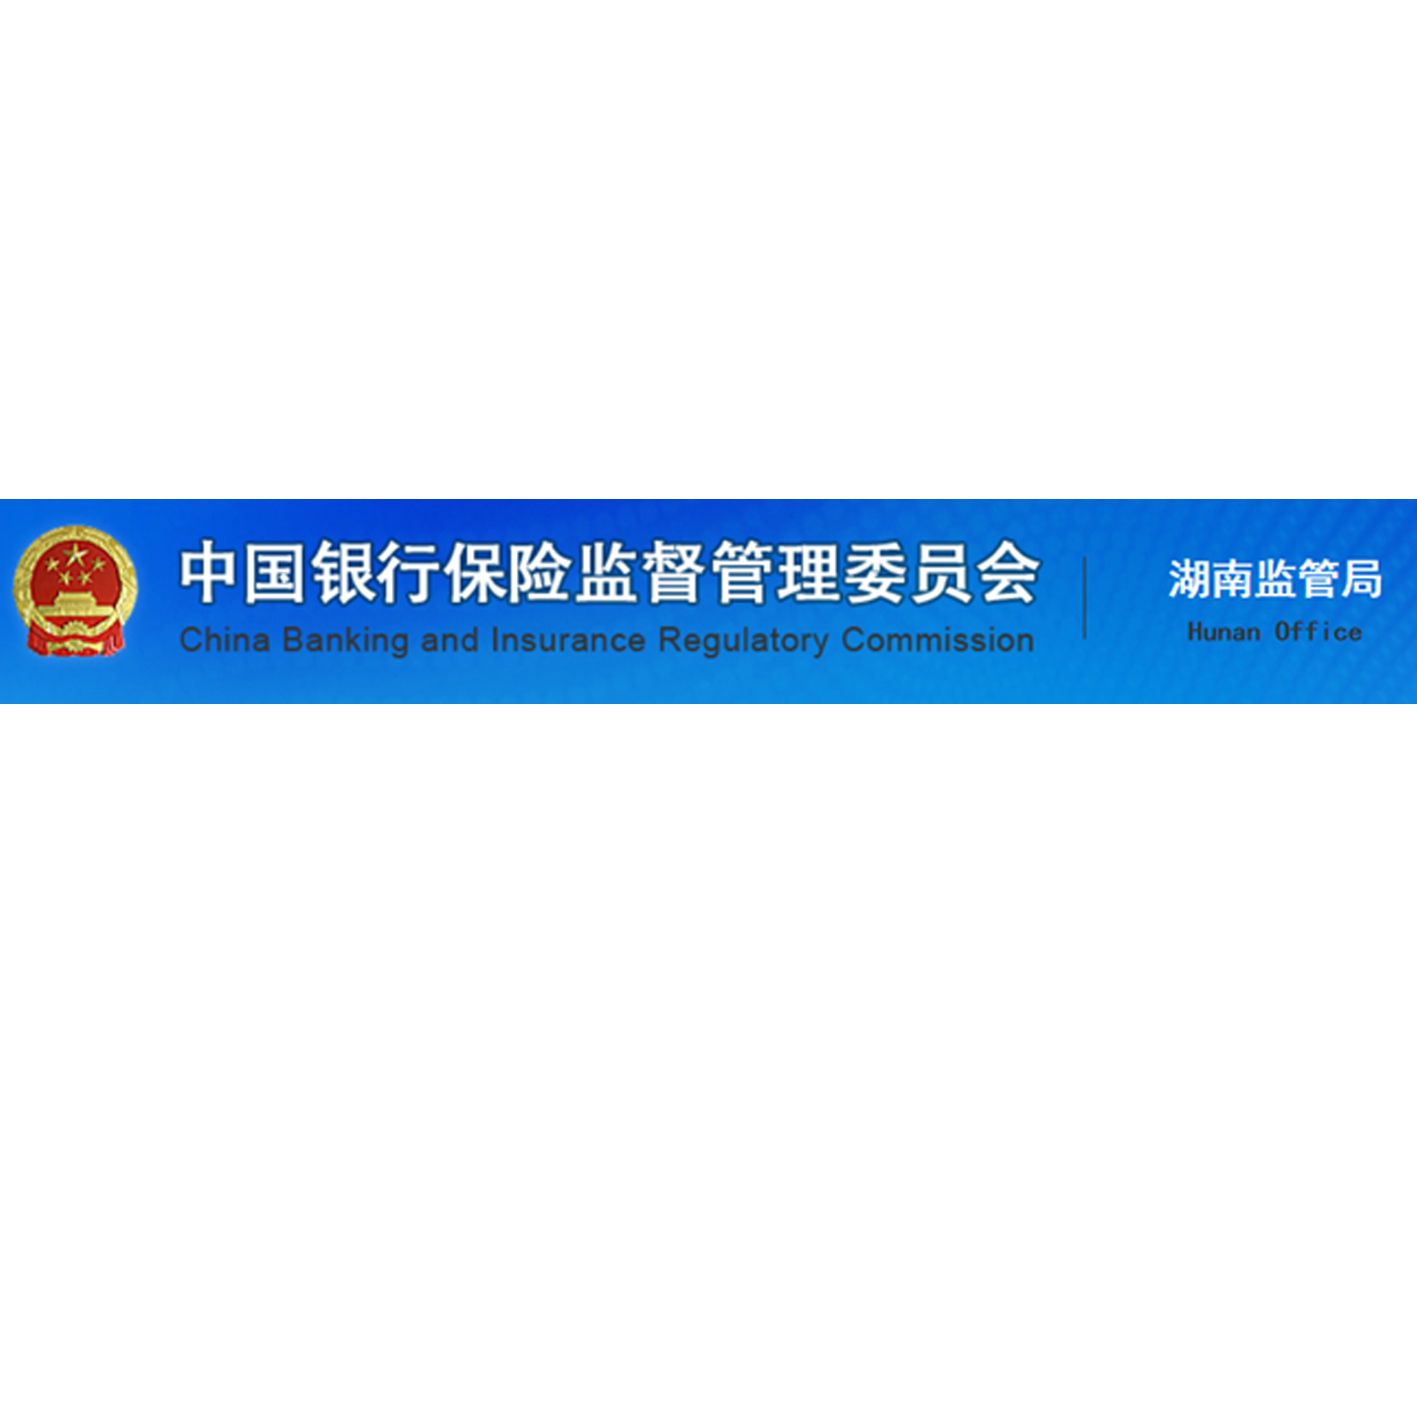 中國銀行保險監督管理委員會湖南監管局